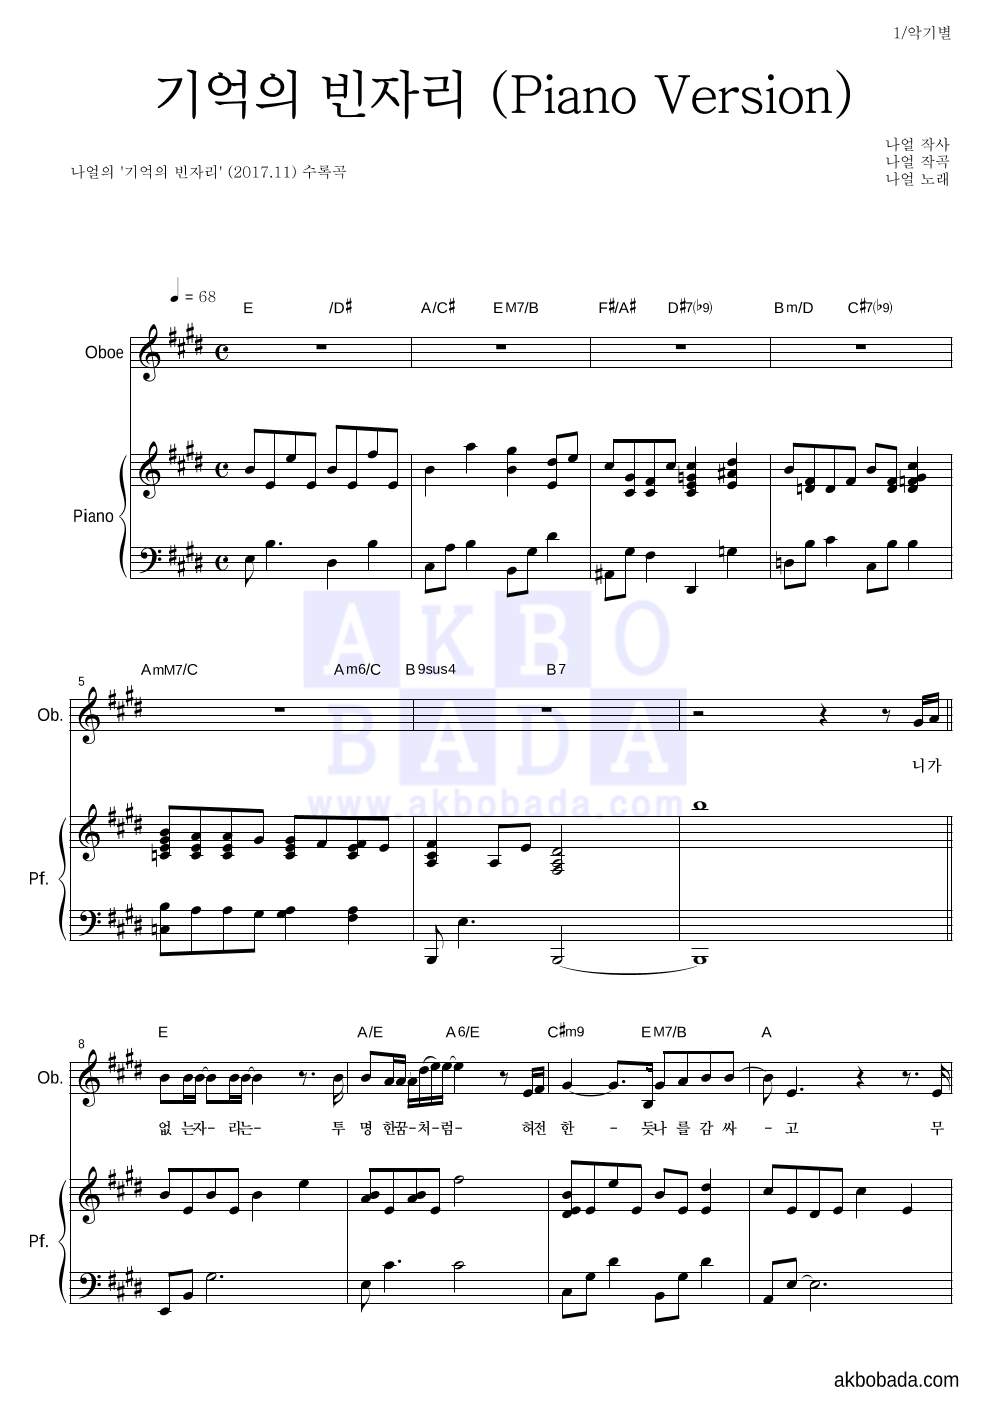 나얼 - 기억의 빈자리 (Piano Version) 오보에&피아노 악보 